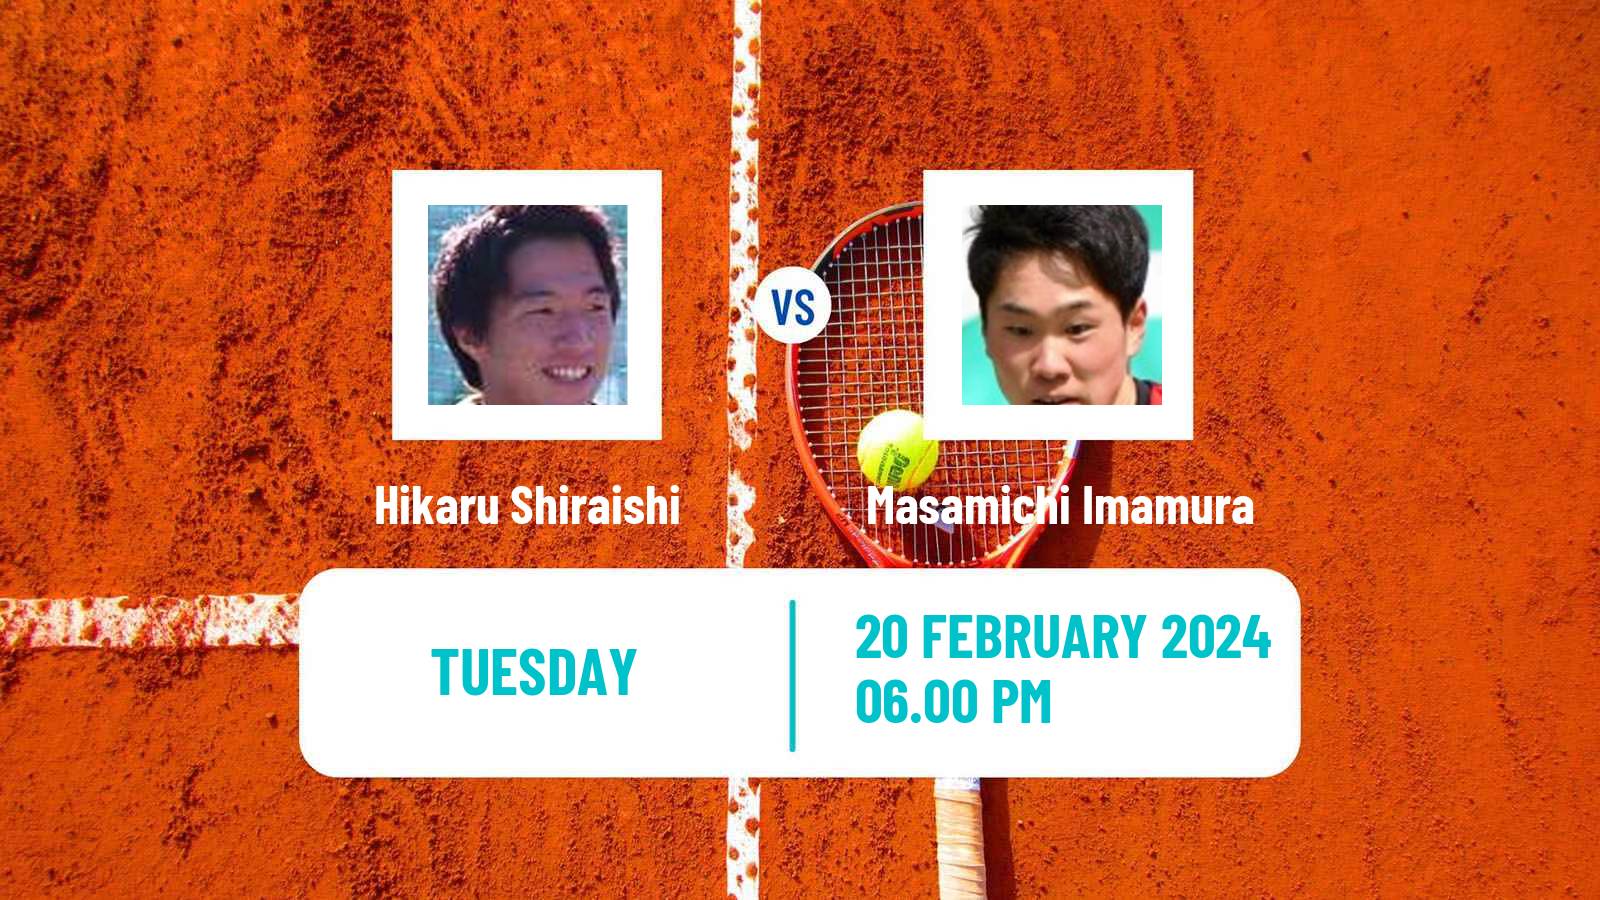 Tennis ITF M25 Traralgon Men Hikaru Shiraishi - Masamichi Imamura